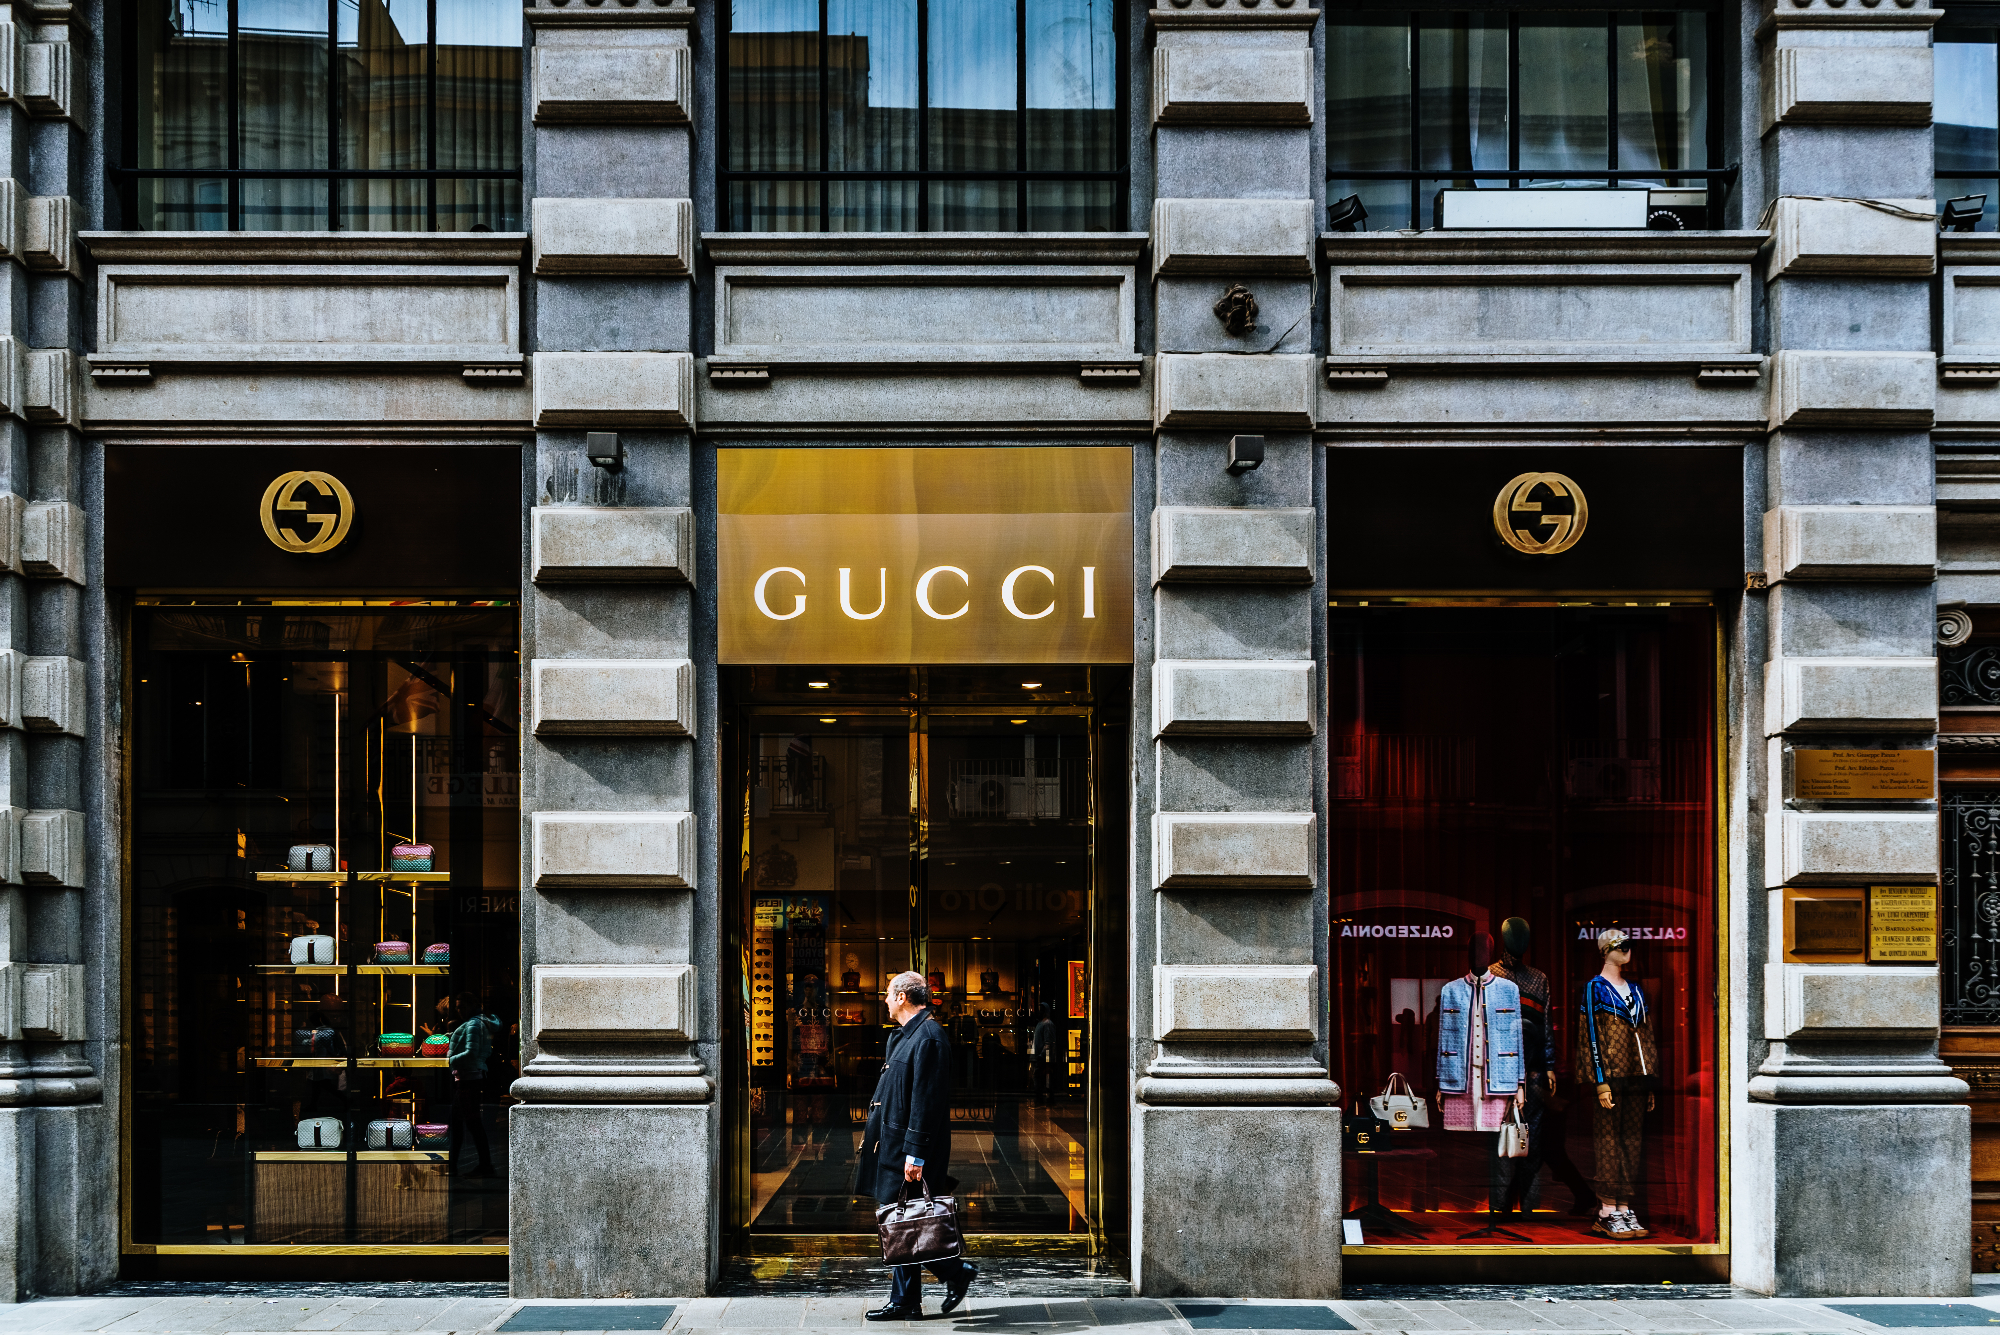 Gucci je znamka, ki je močno zaslovela po celem svetu